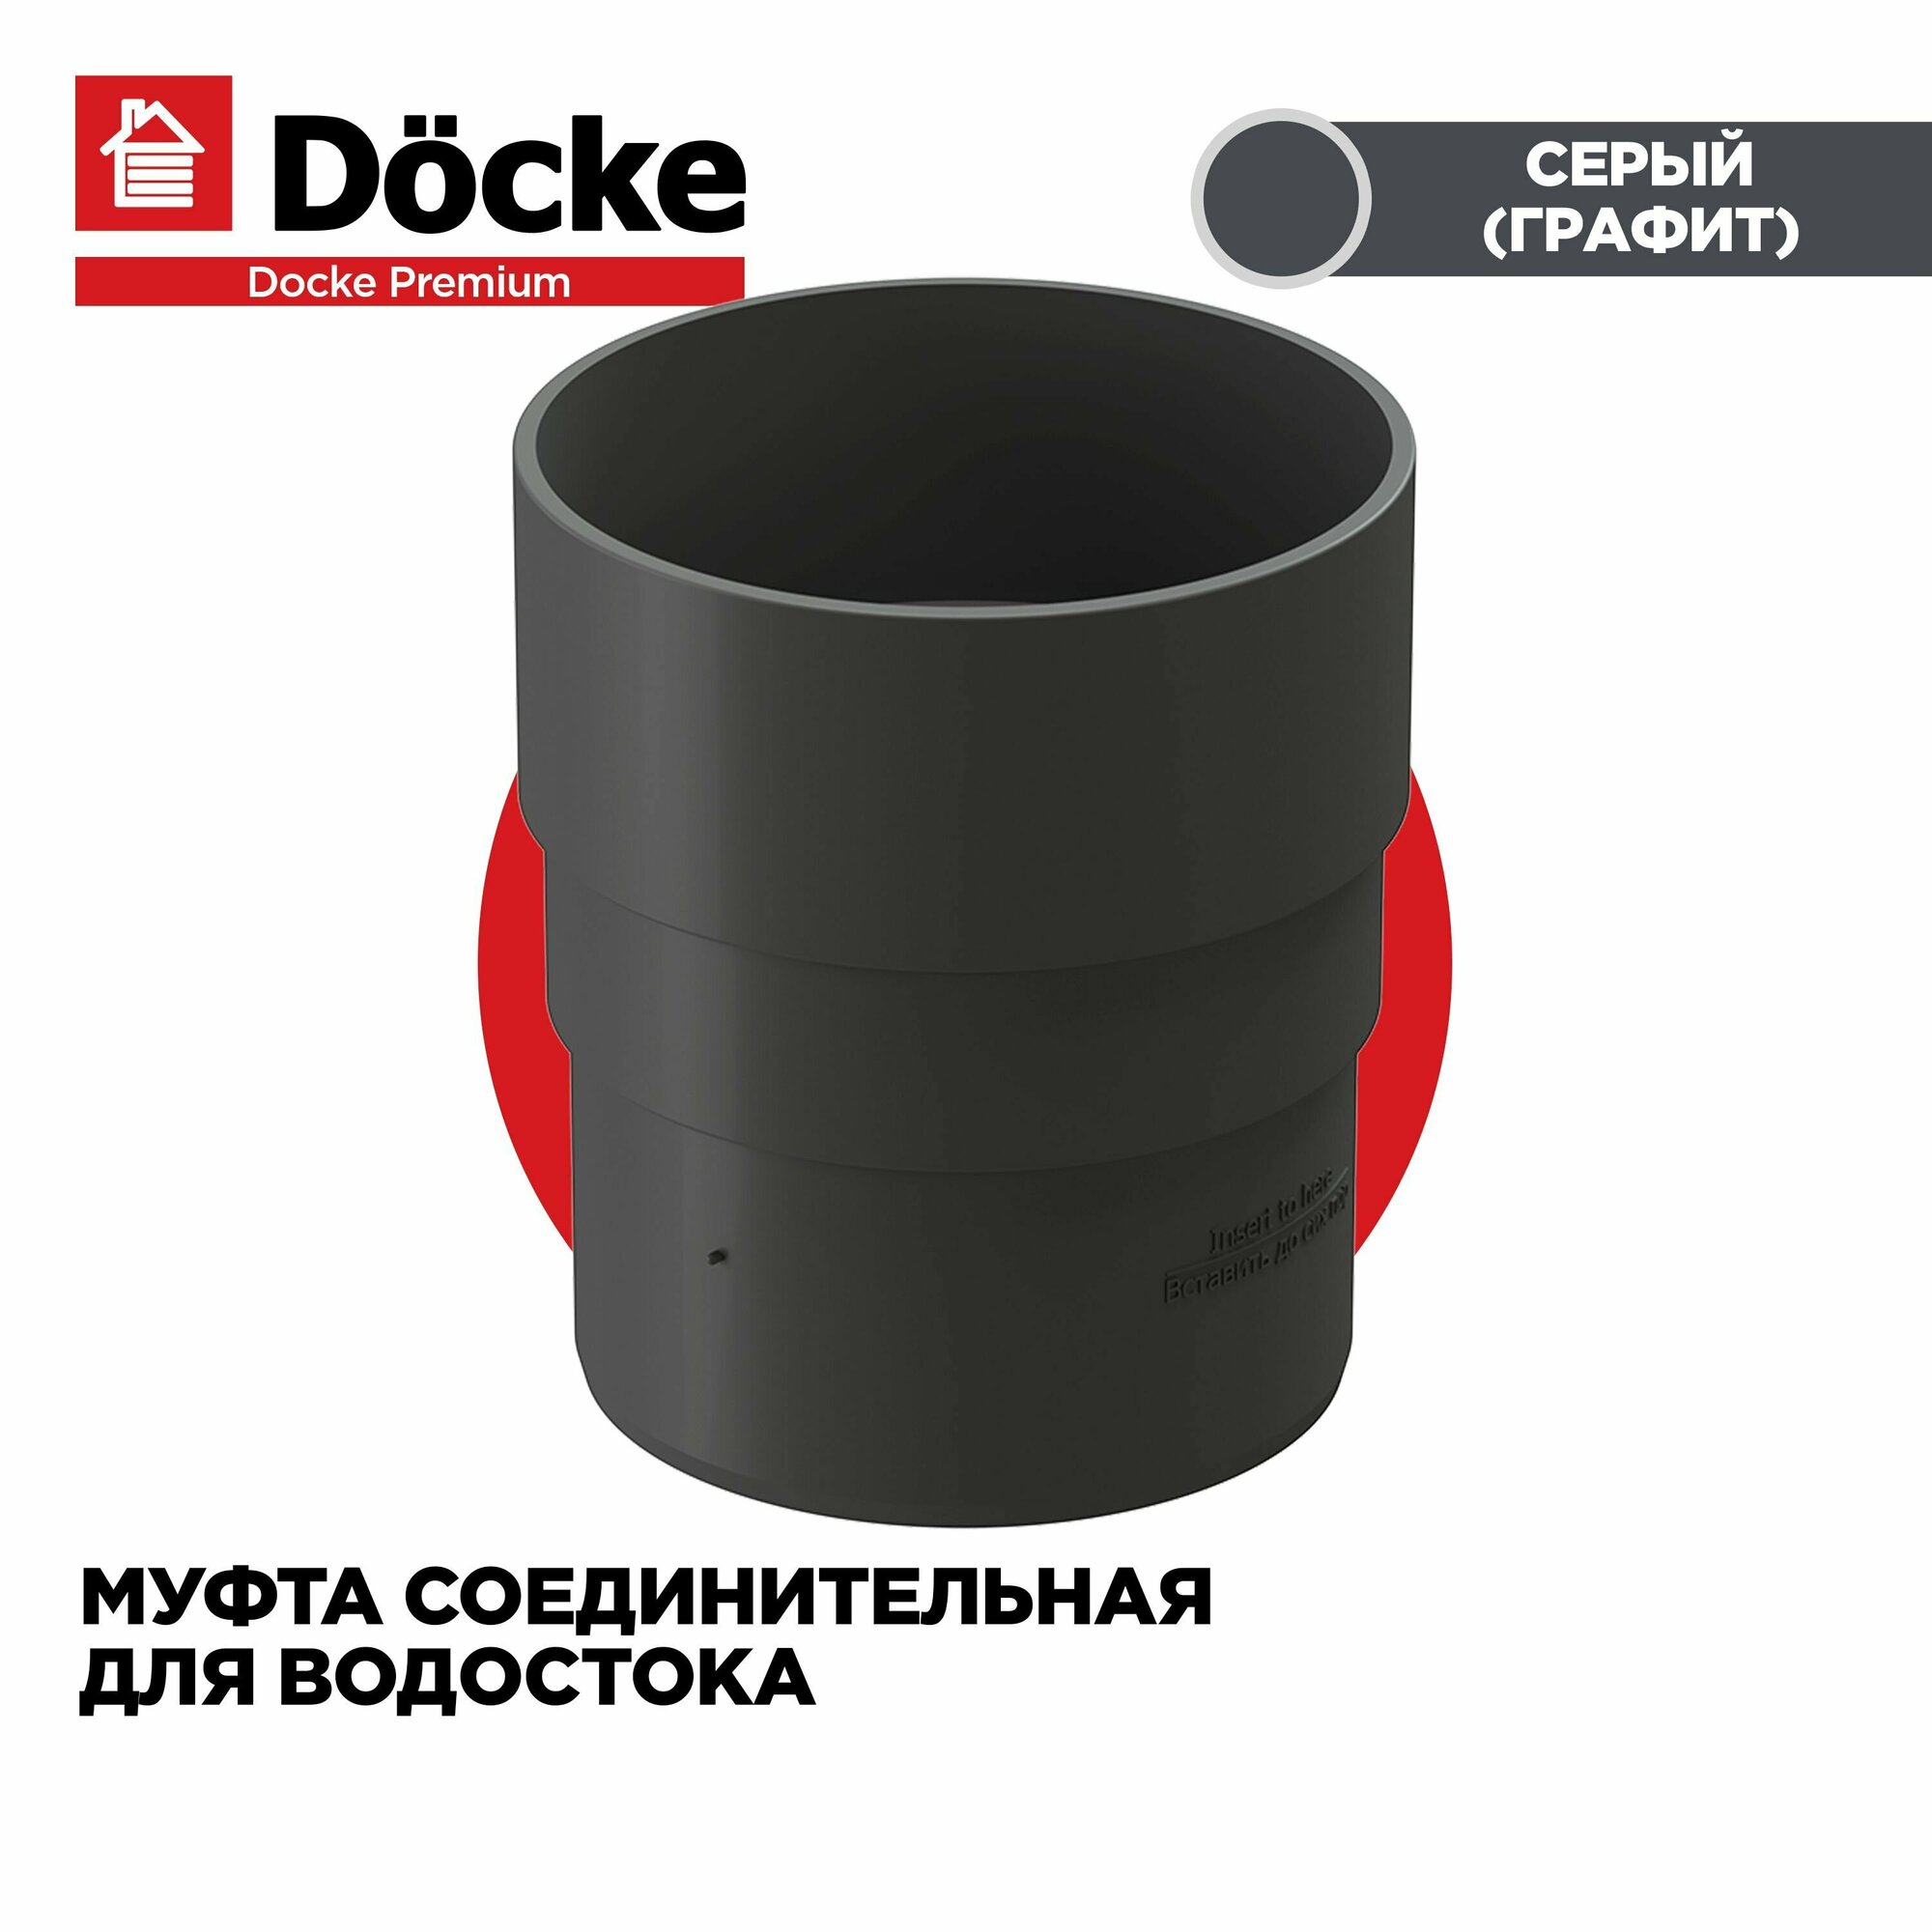 Муфта соединительная для труб PREMIUM водосточной системы docke цвет Графит (Серый). 1 штука